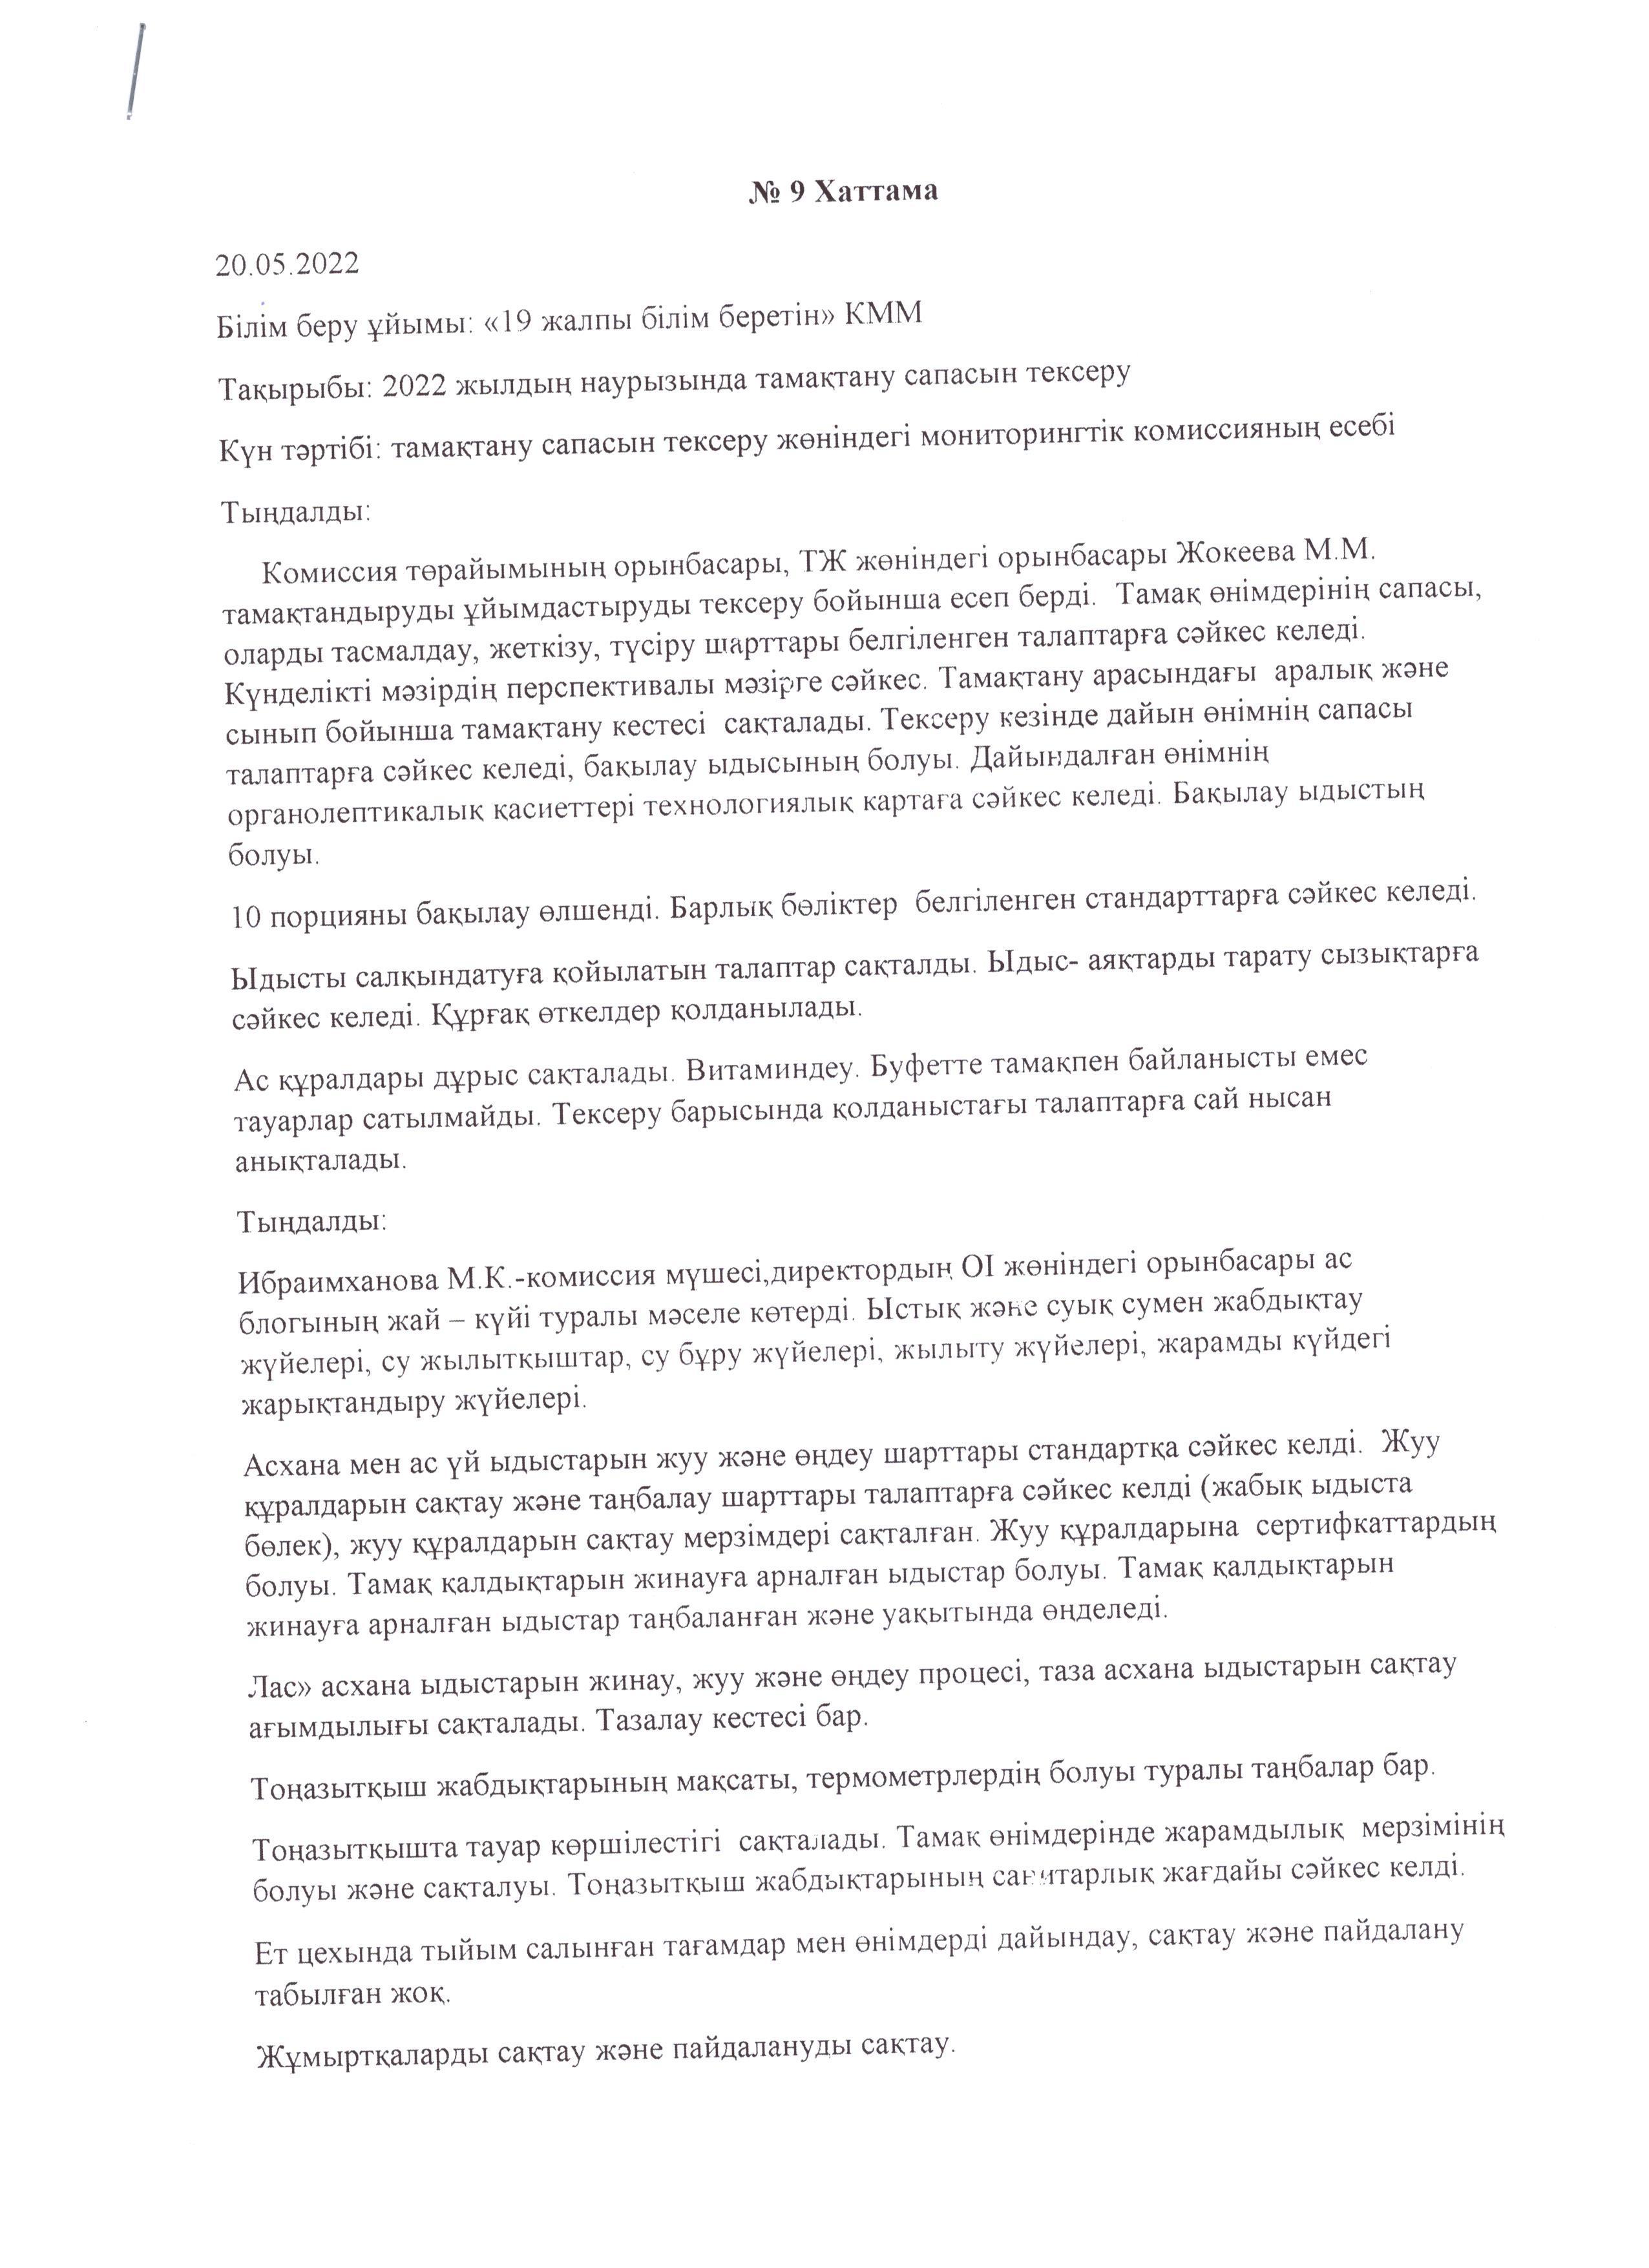 Мамыр айындағы мониторинг комиссиясының хаттамасы/ Протокол мониторинговой комиссии за May